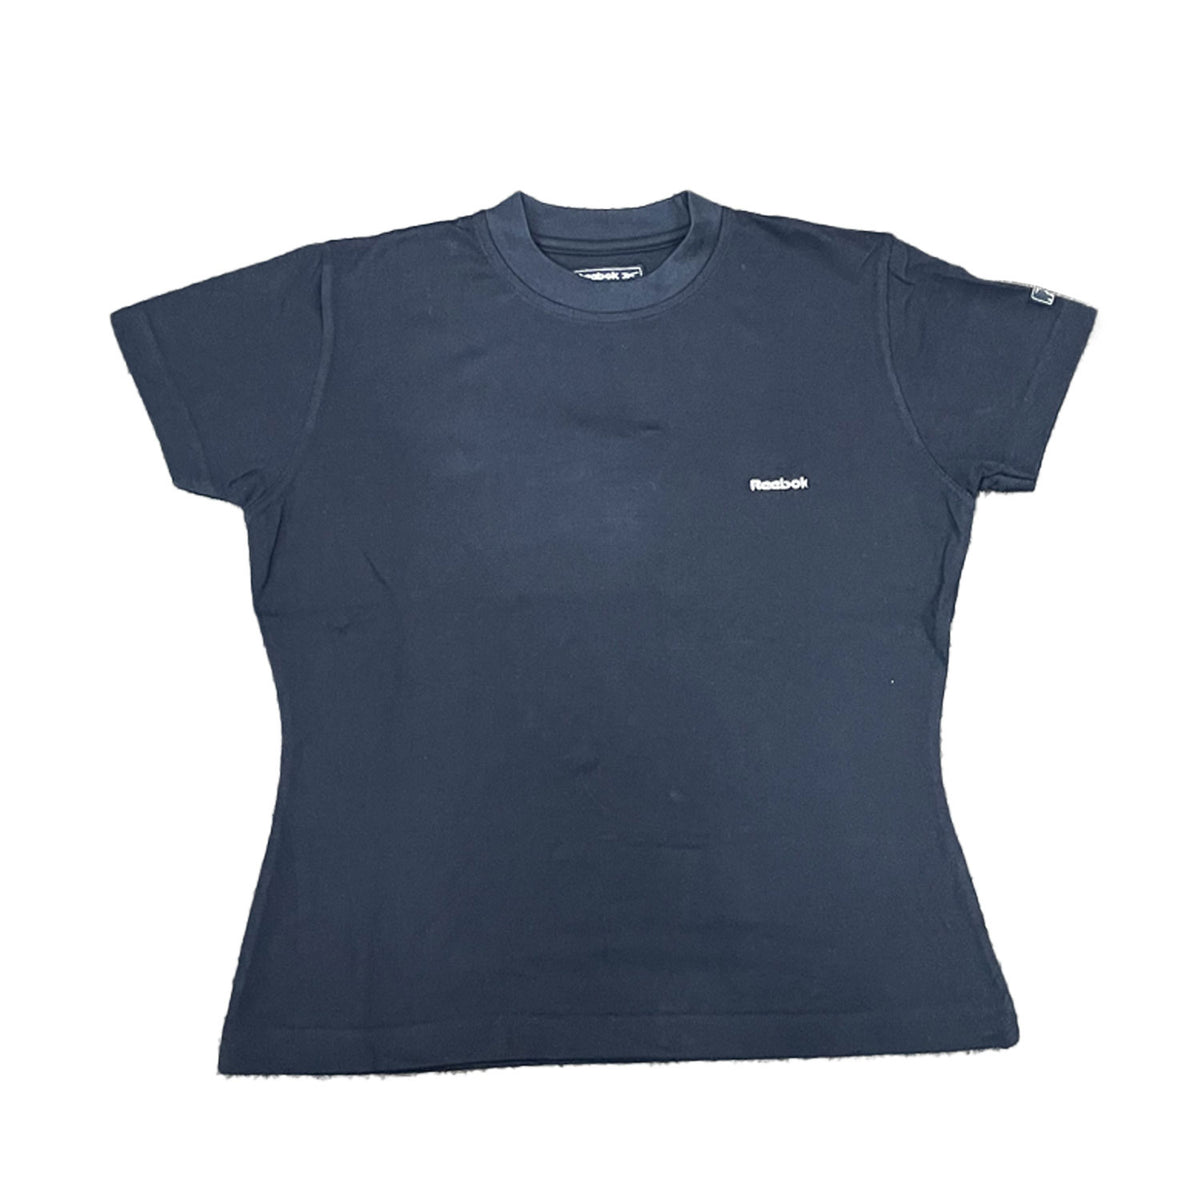 Reebok Womens Freestyle Athletics T-Shirt - Navy - UK Size 12